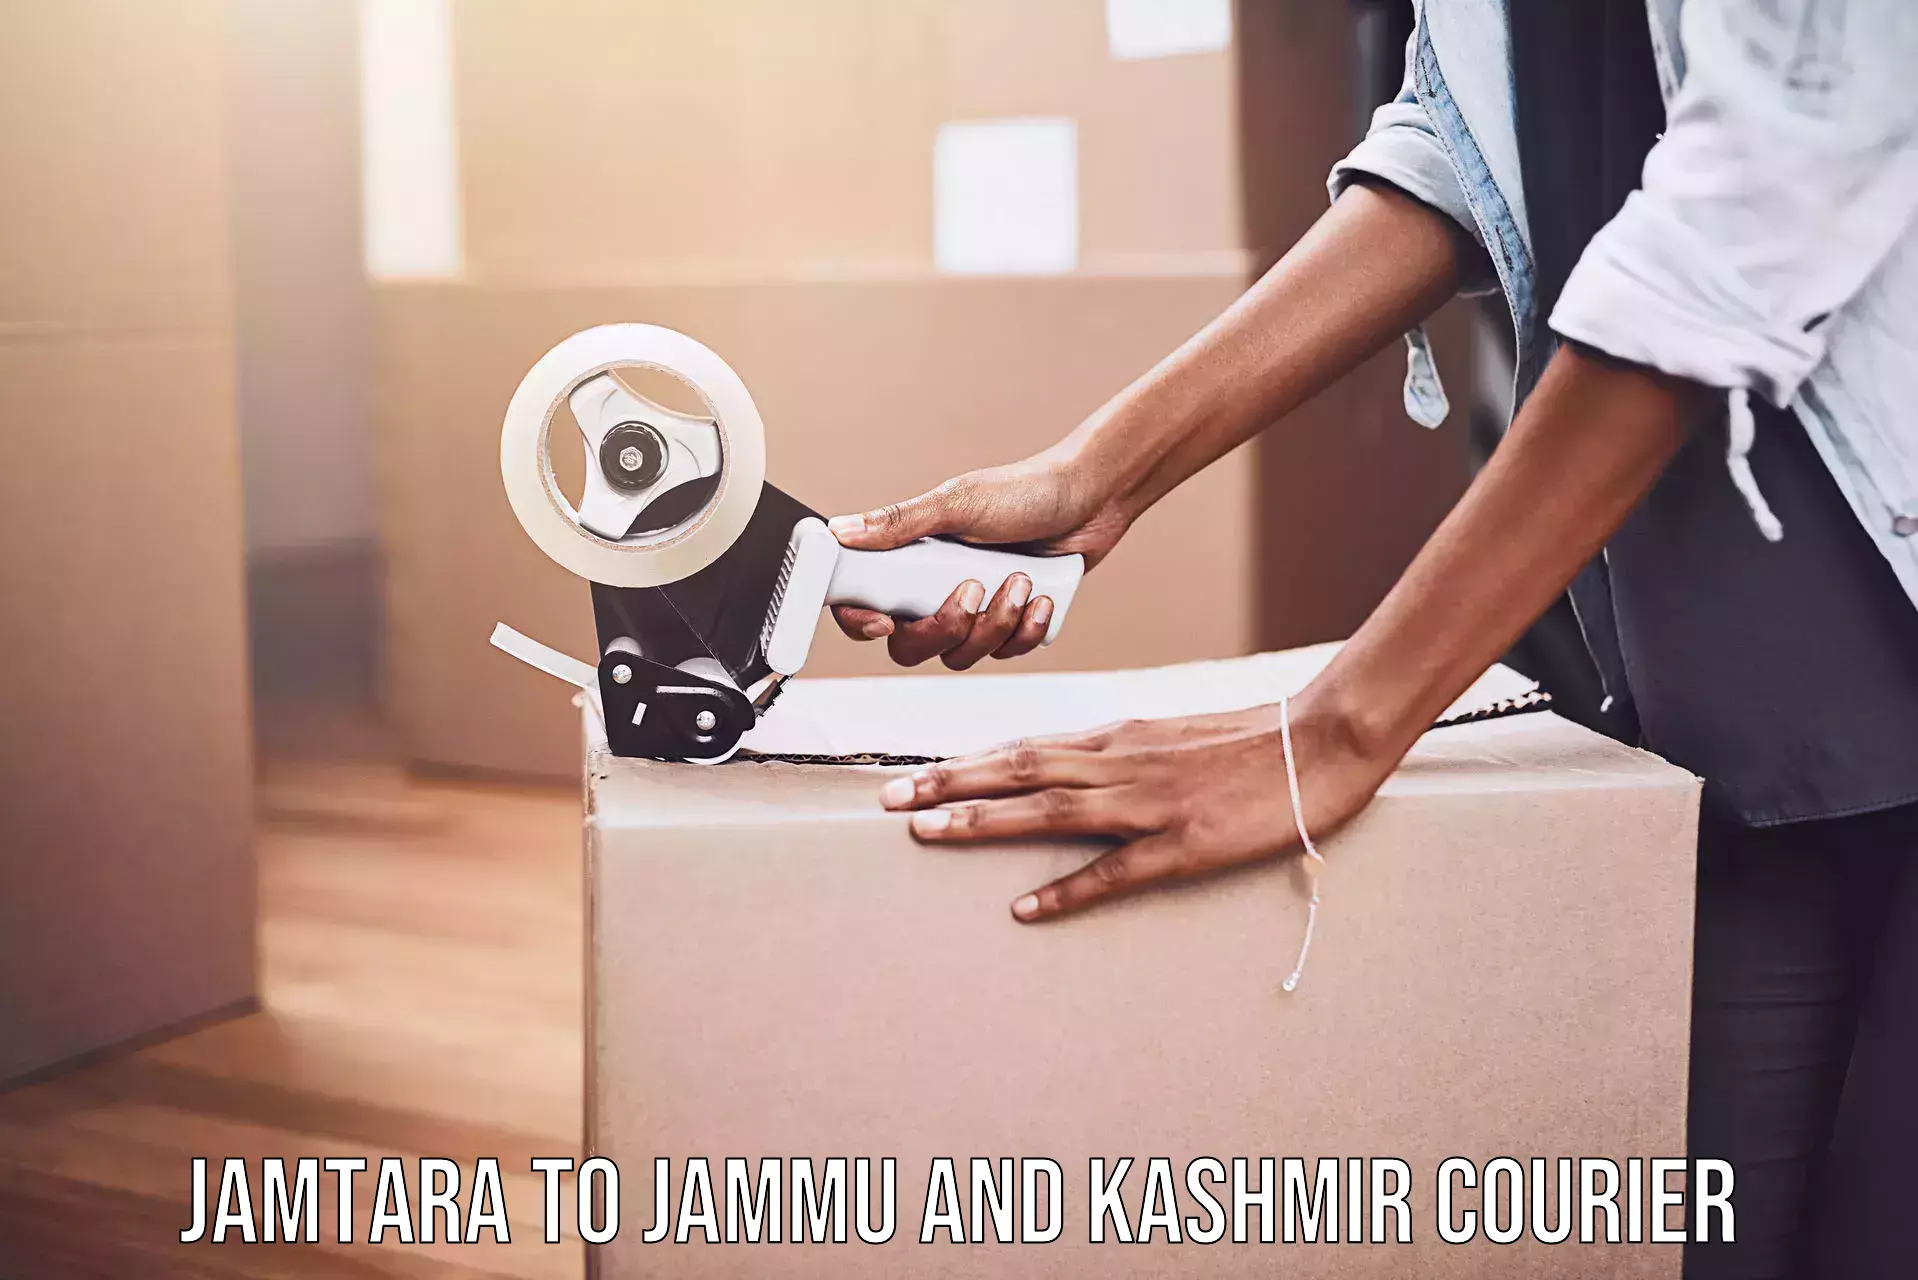 Courier service comparison Jamtara to Kargil